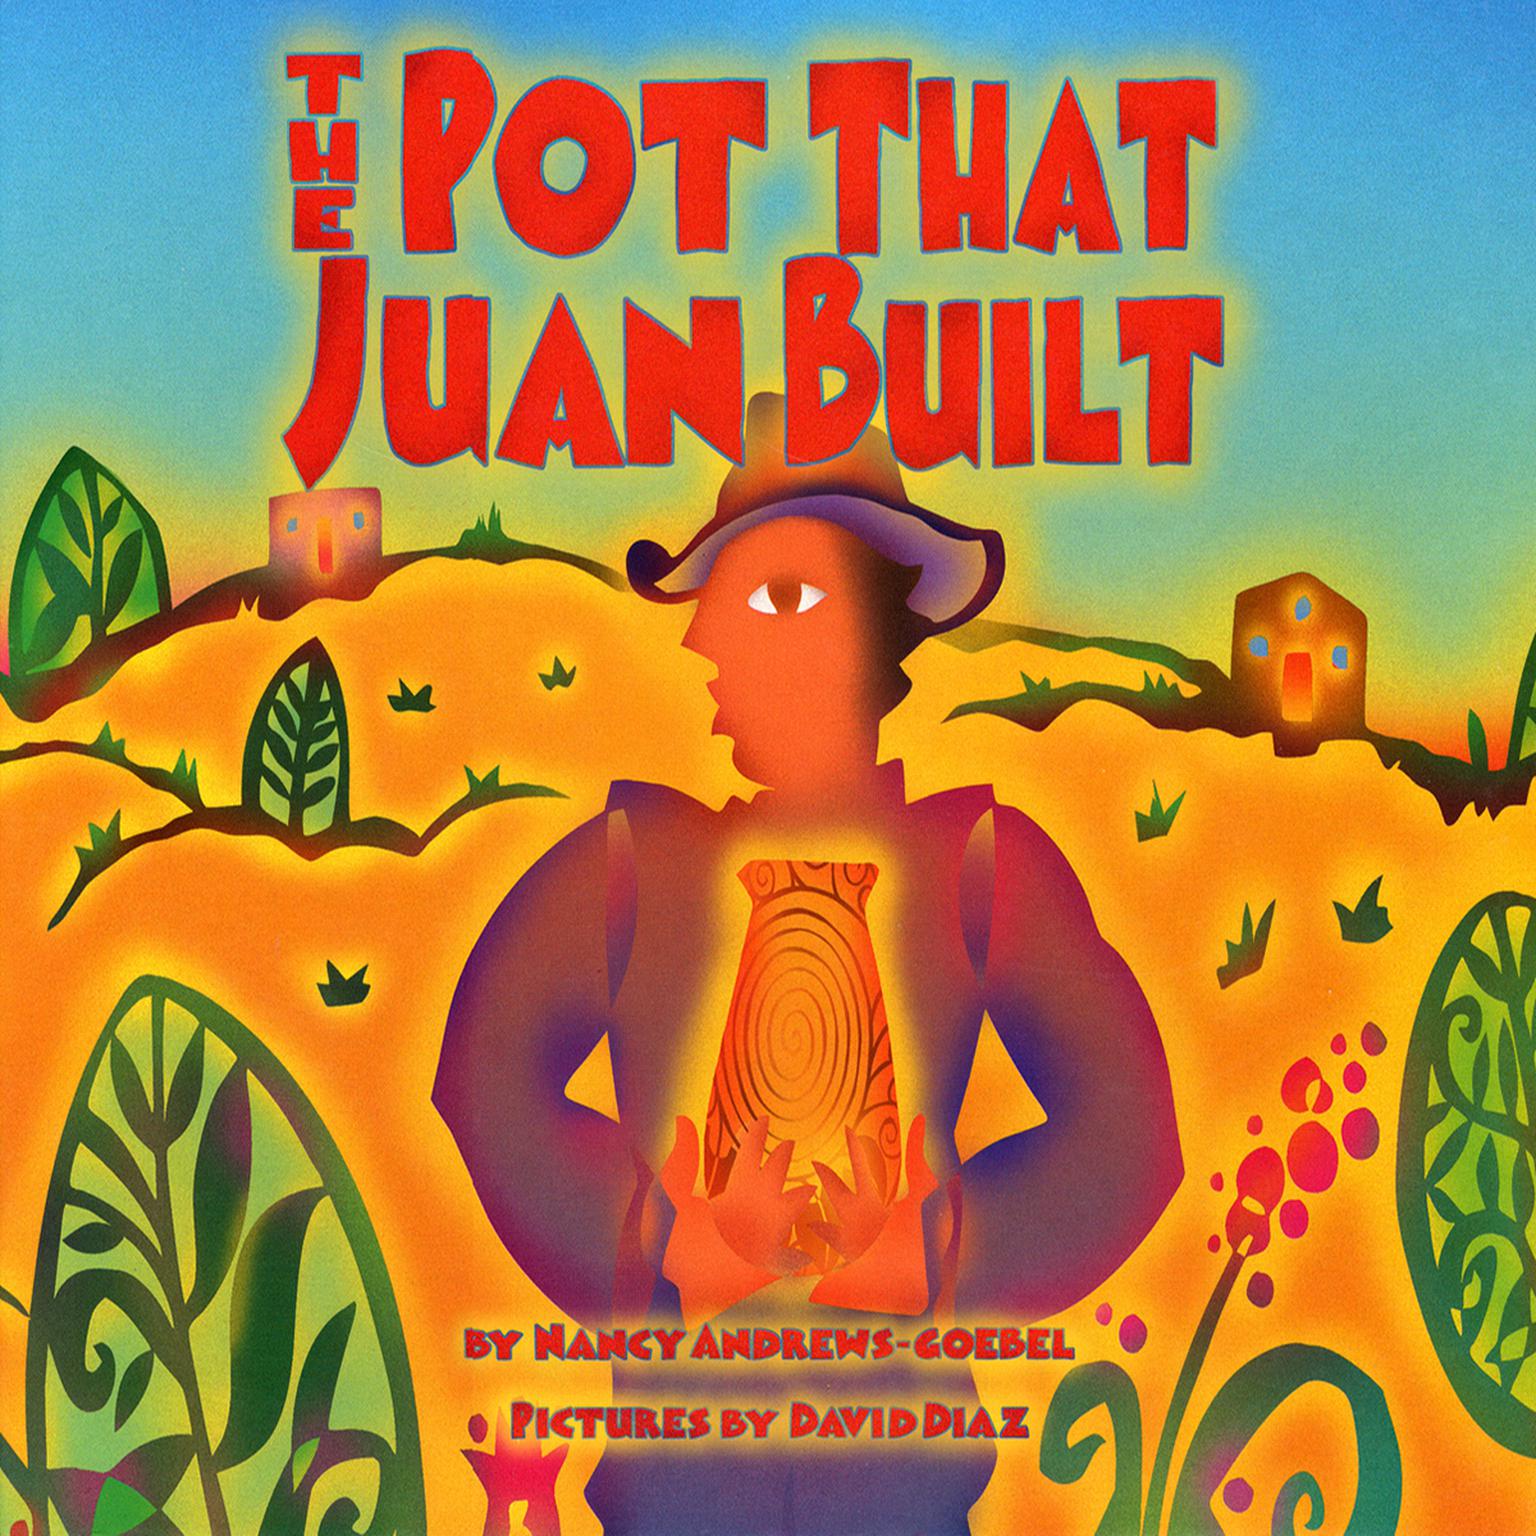 The Pot That Juan Built  Audiobook, by Nancy Andrews-Goebel